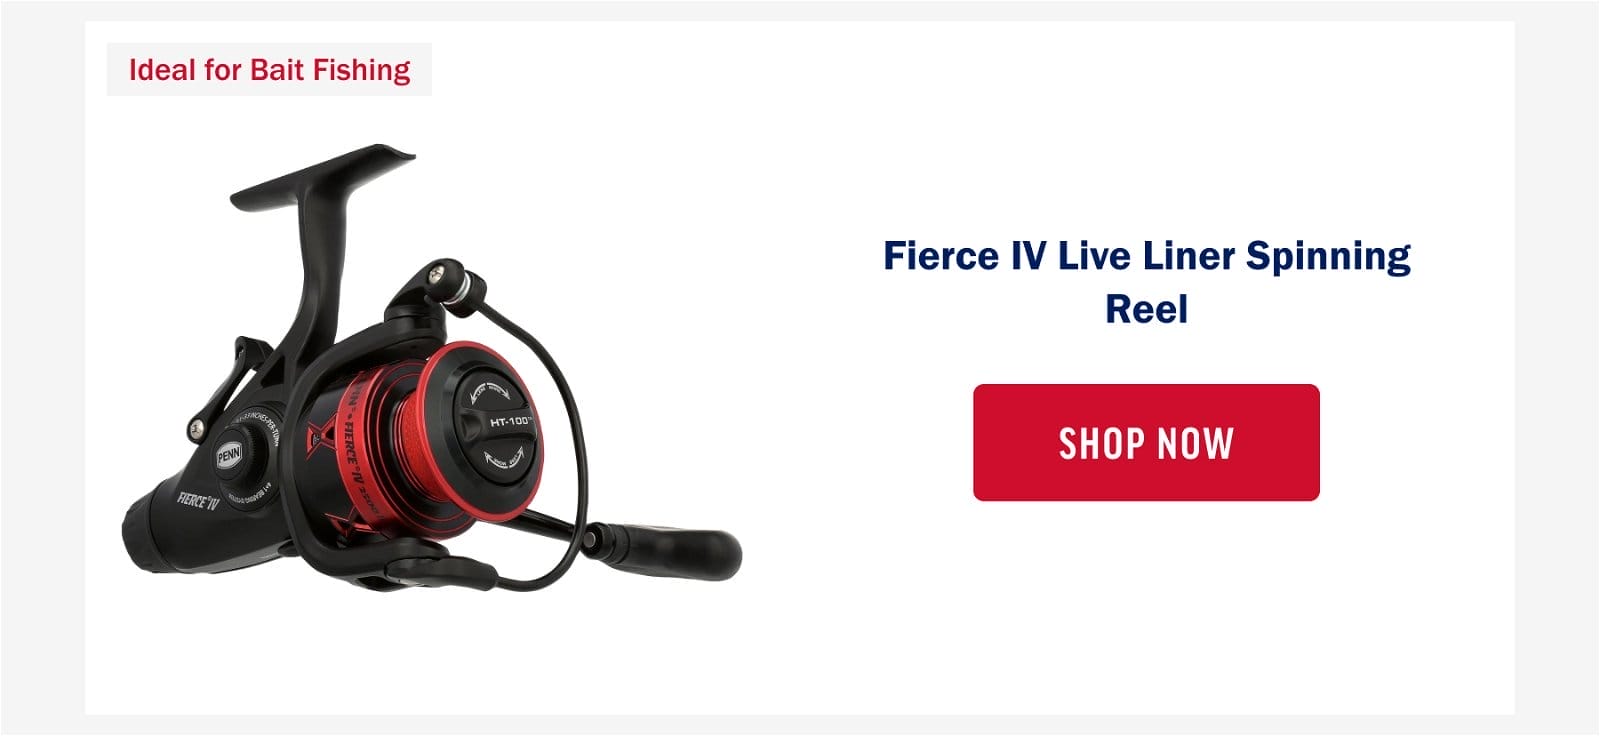 Fierce IV Live Liner Spinning Reel